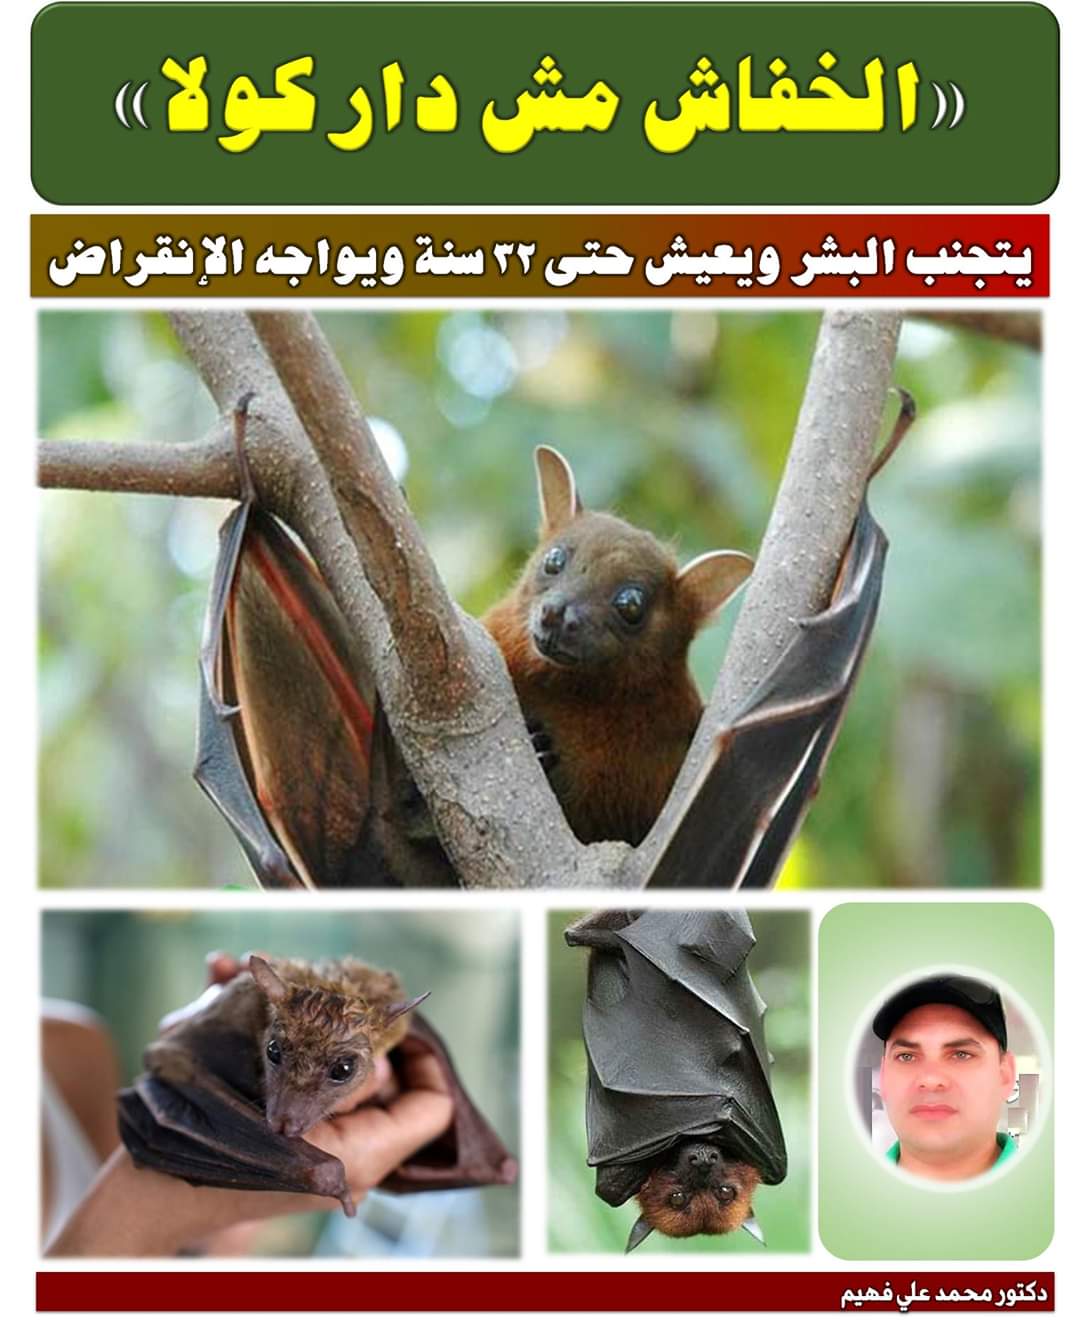 صورة الدكتور محمد فهيم يكتب : لماذا اللوم على الخفافيش في نشر فيروس كورونا ؟.. فالبشر هم السبب !!